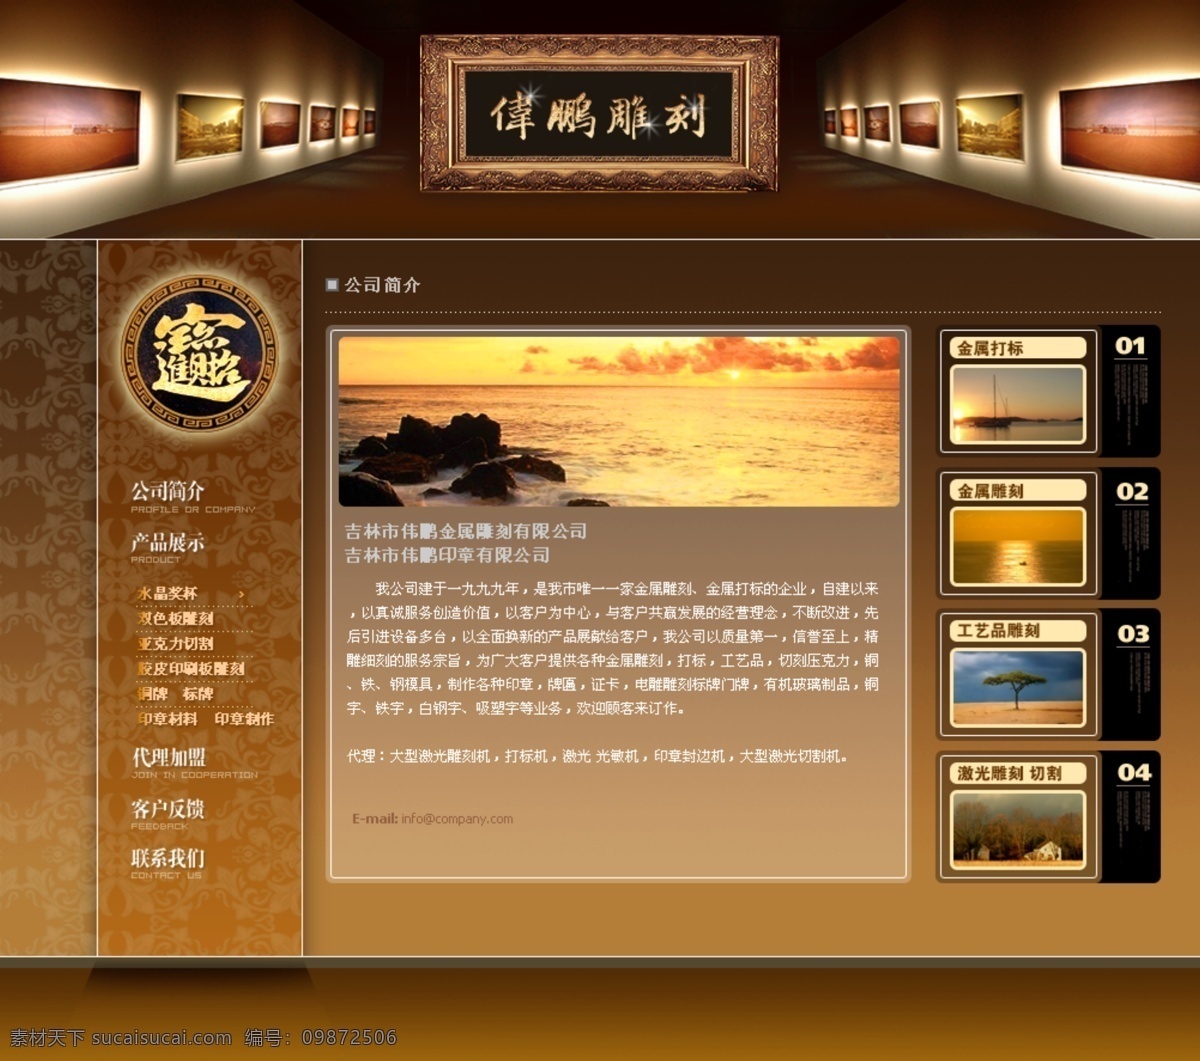 金属 雕刻 企业 网页模板 古典 中国风格 金黄色色调 网页素材